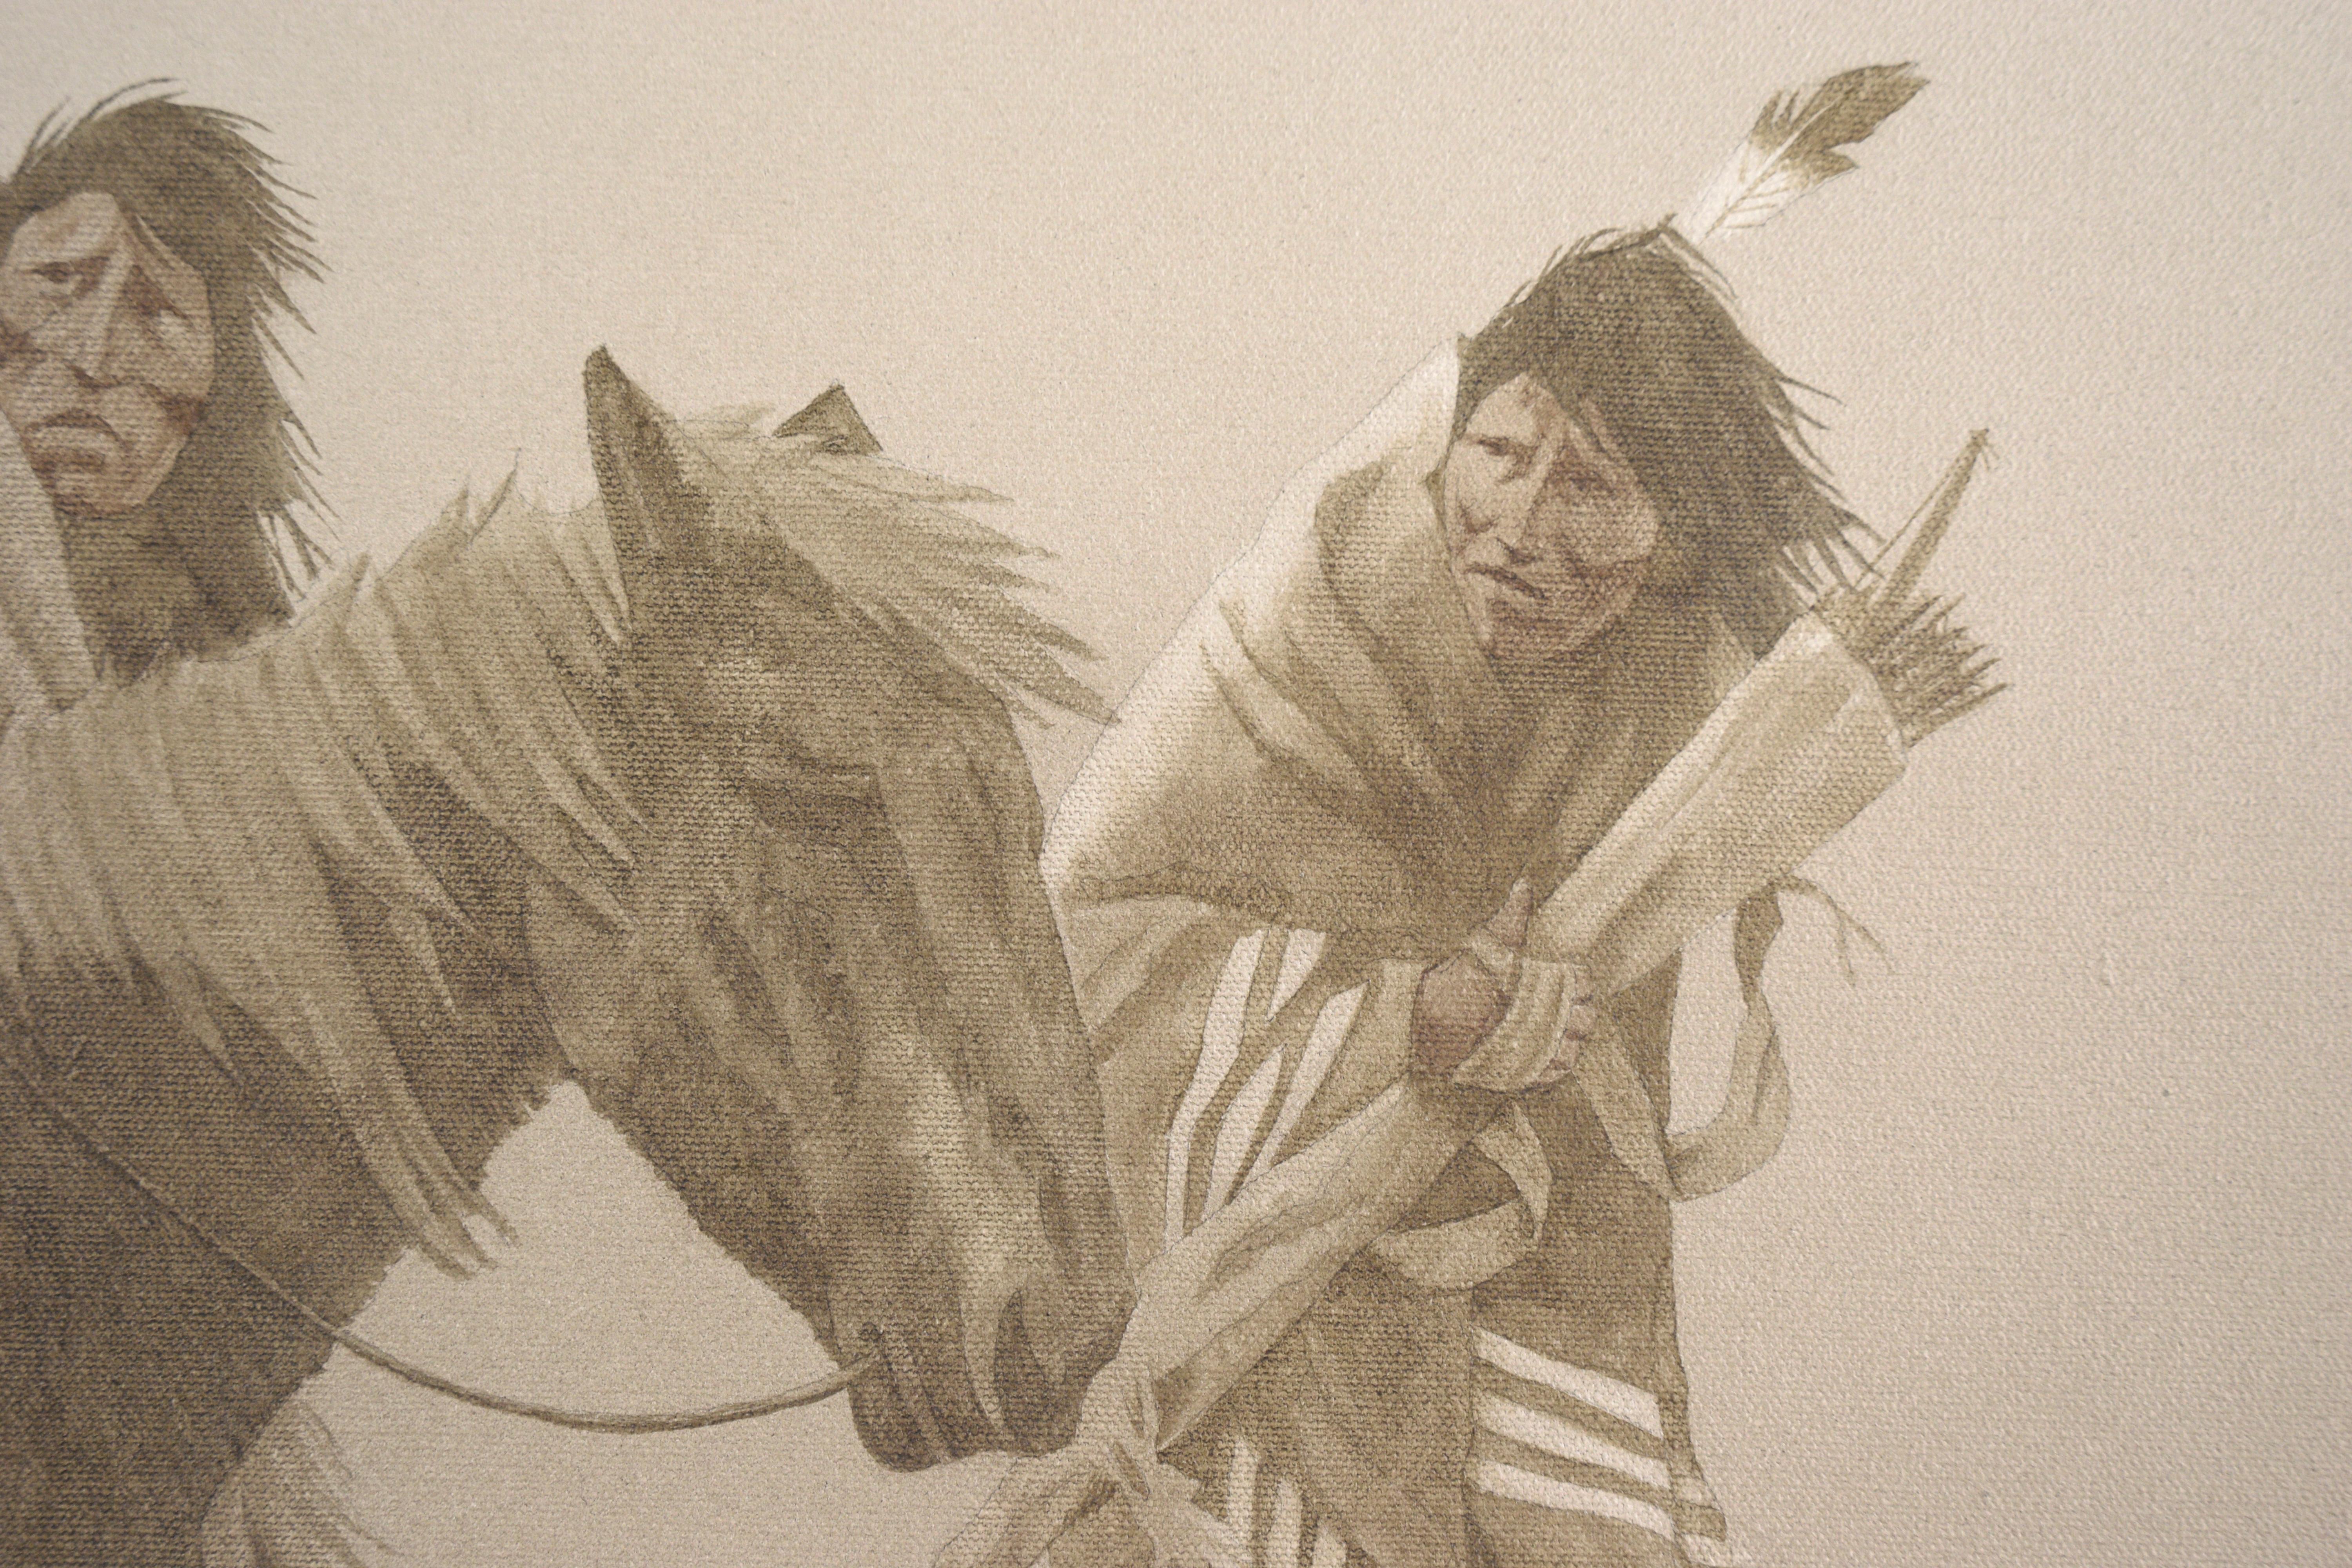 Düstere Darstellung der amerikanischen Ureinwohner im Winter von John Pace (Amerikaner, 1930-2006). Acryl auf Leinwand. Signiert 